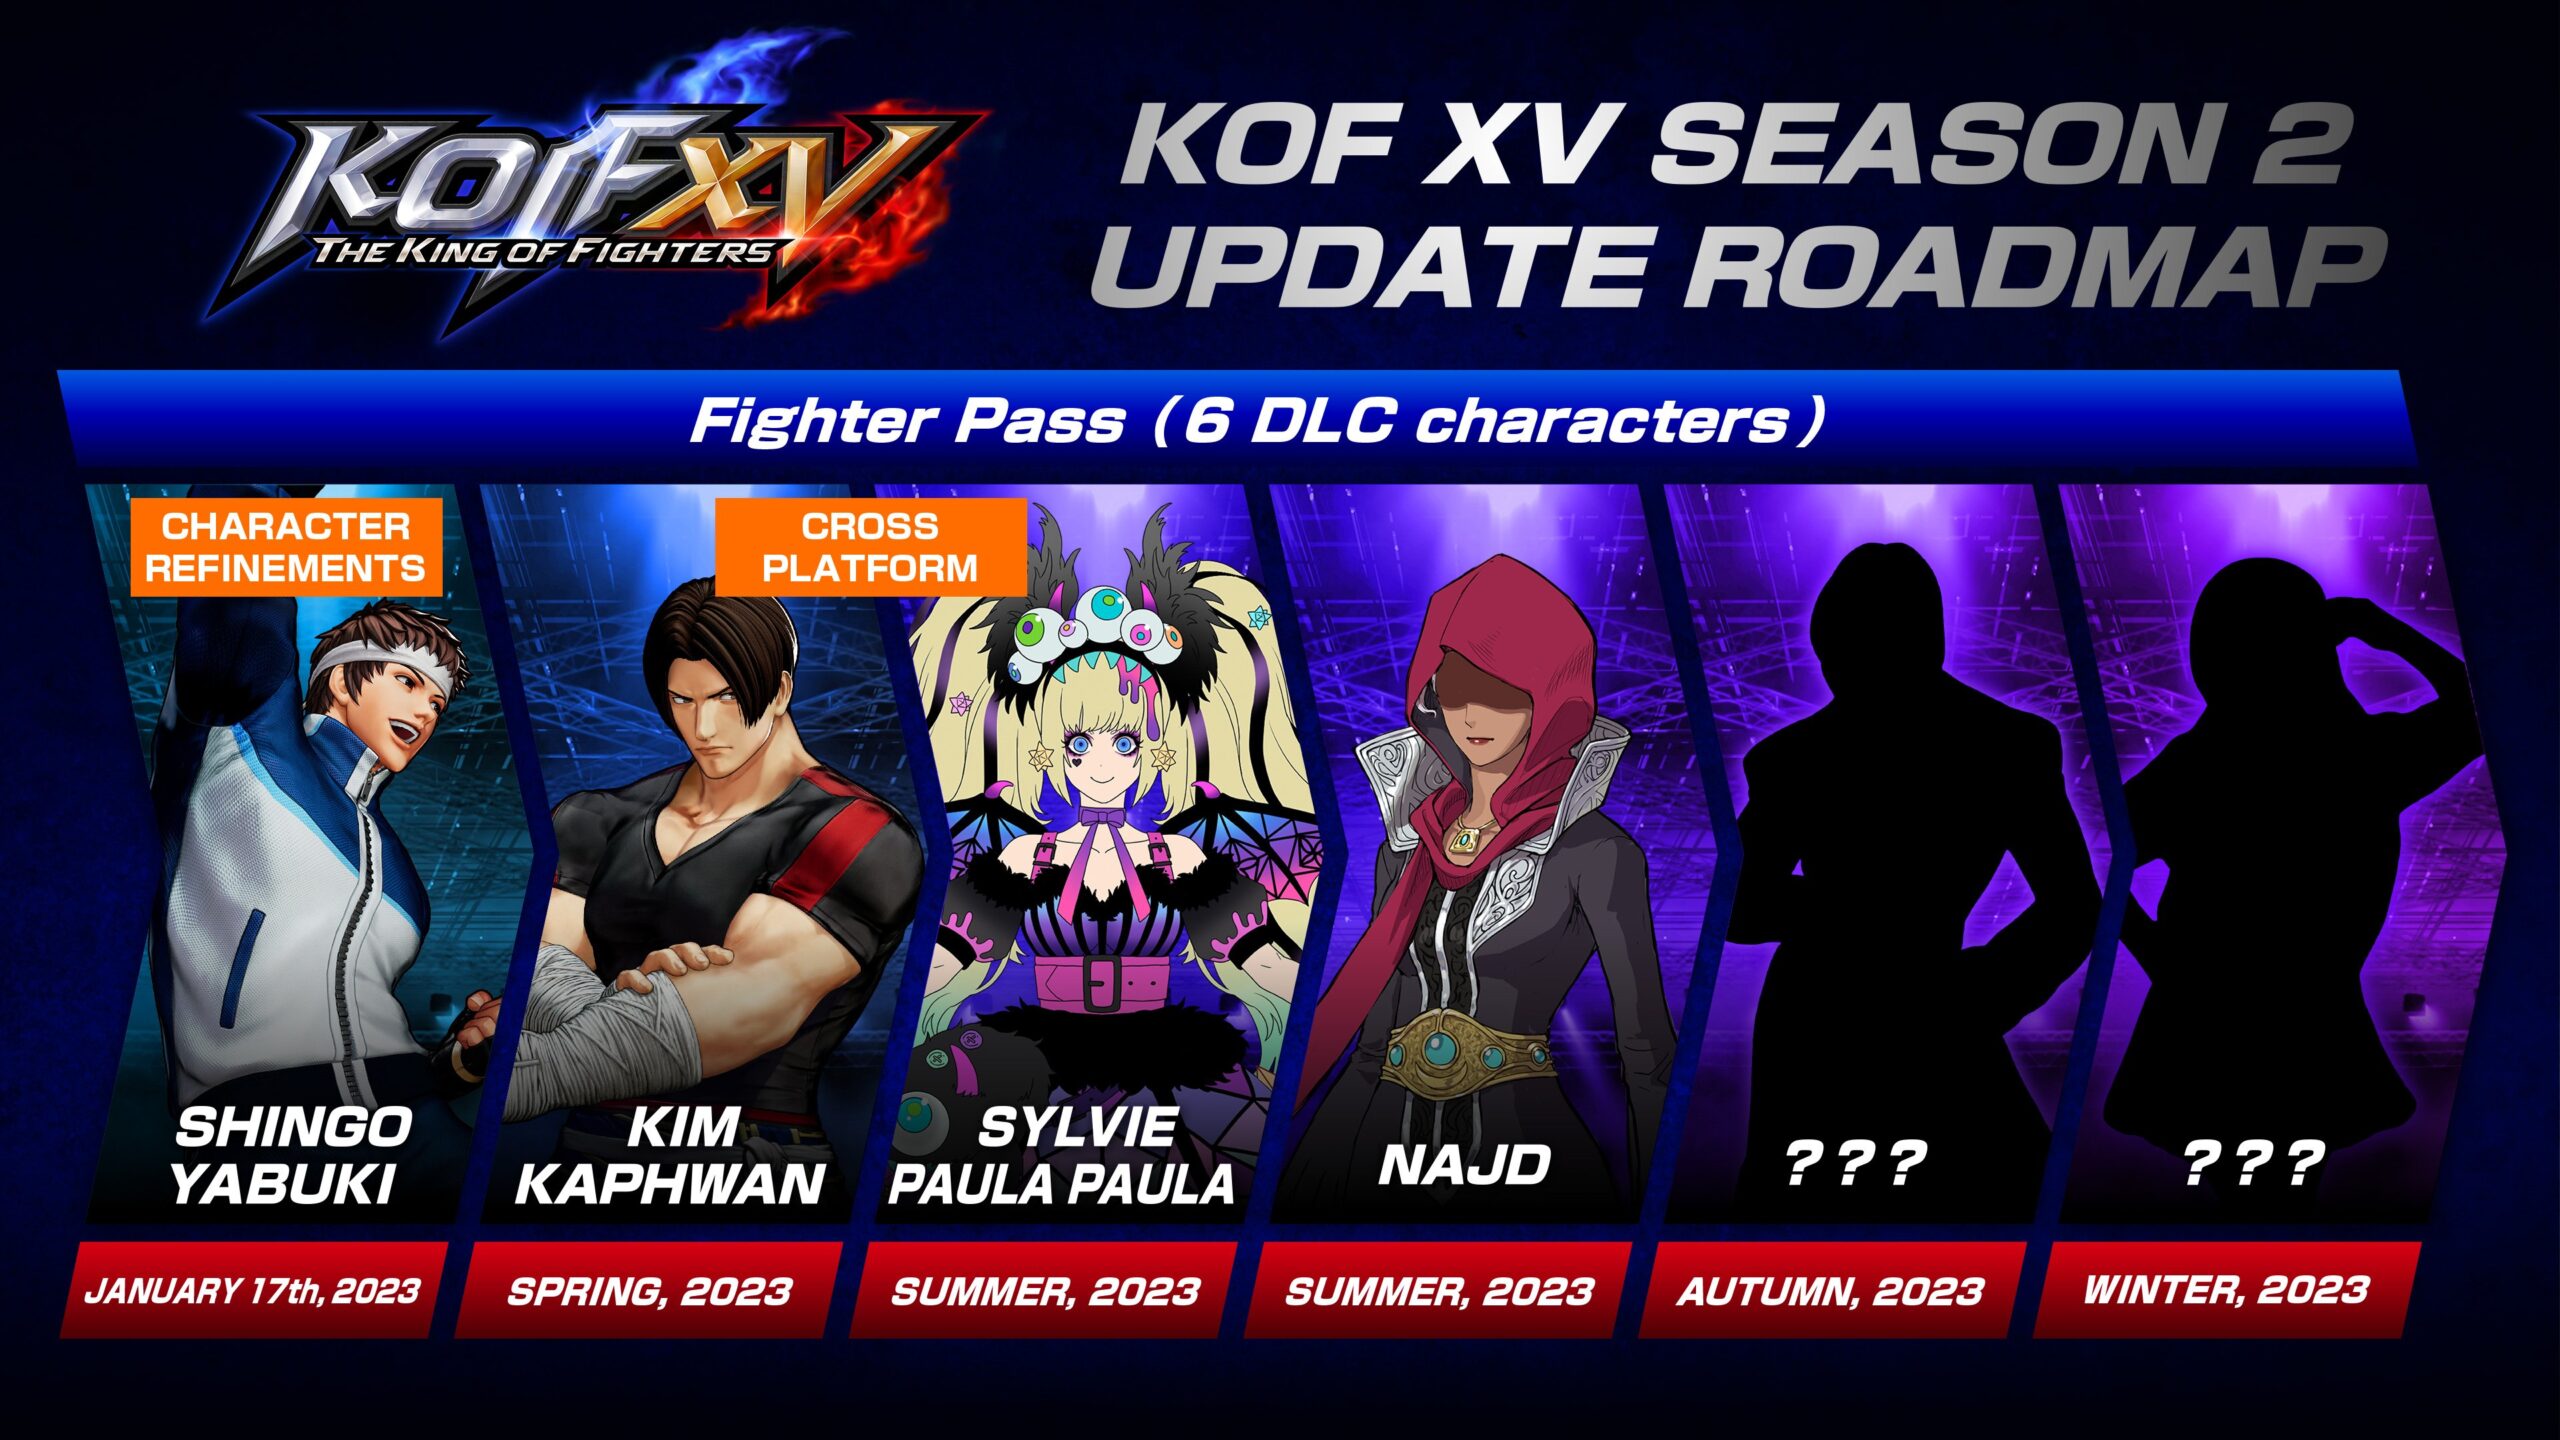 Shingo Yabuki, personagem de DLC da 2° temporada de The King of Fighters XV, será lançado em 17 de janeiro